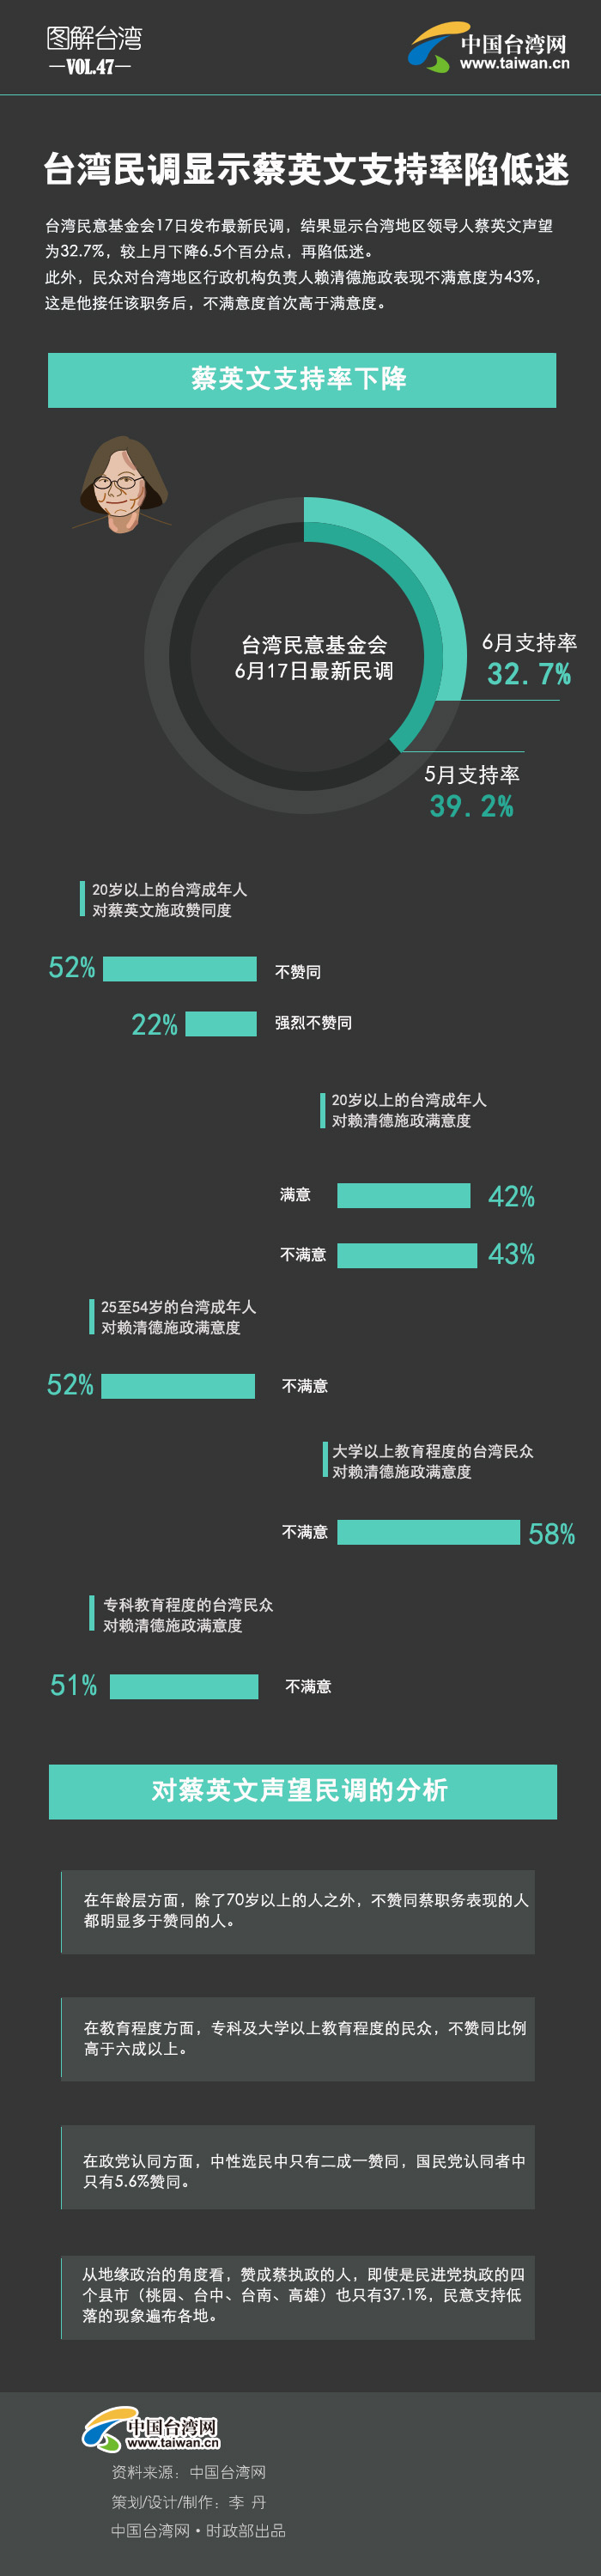 台灣民調顯示蔡英文支持率陷低迷